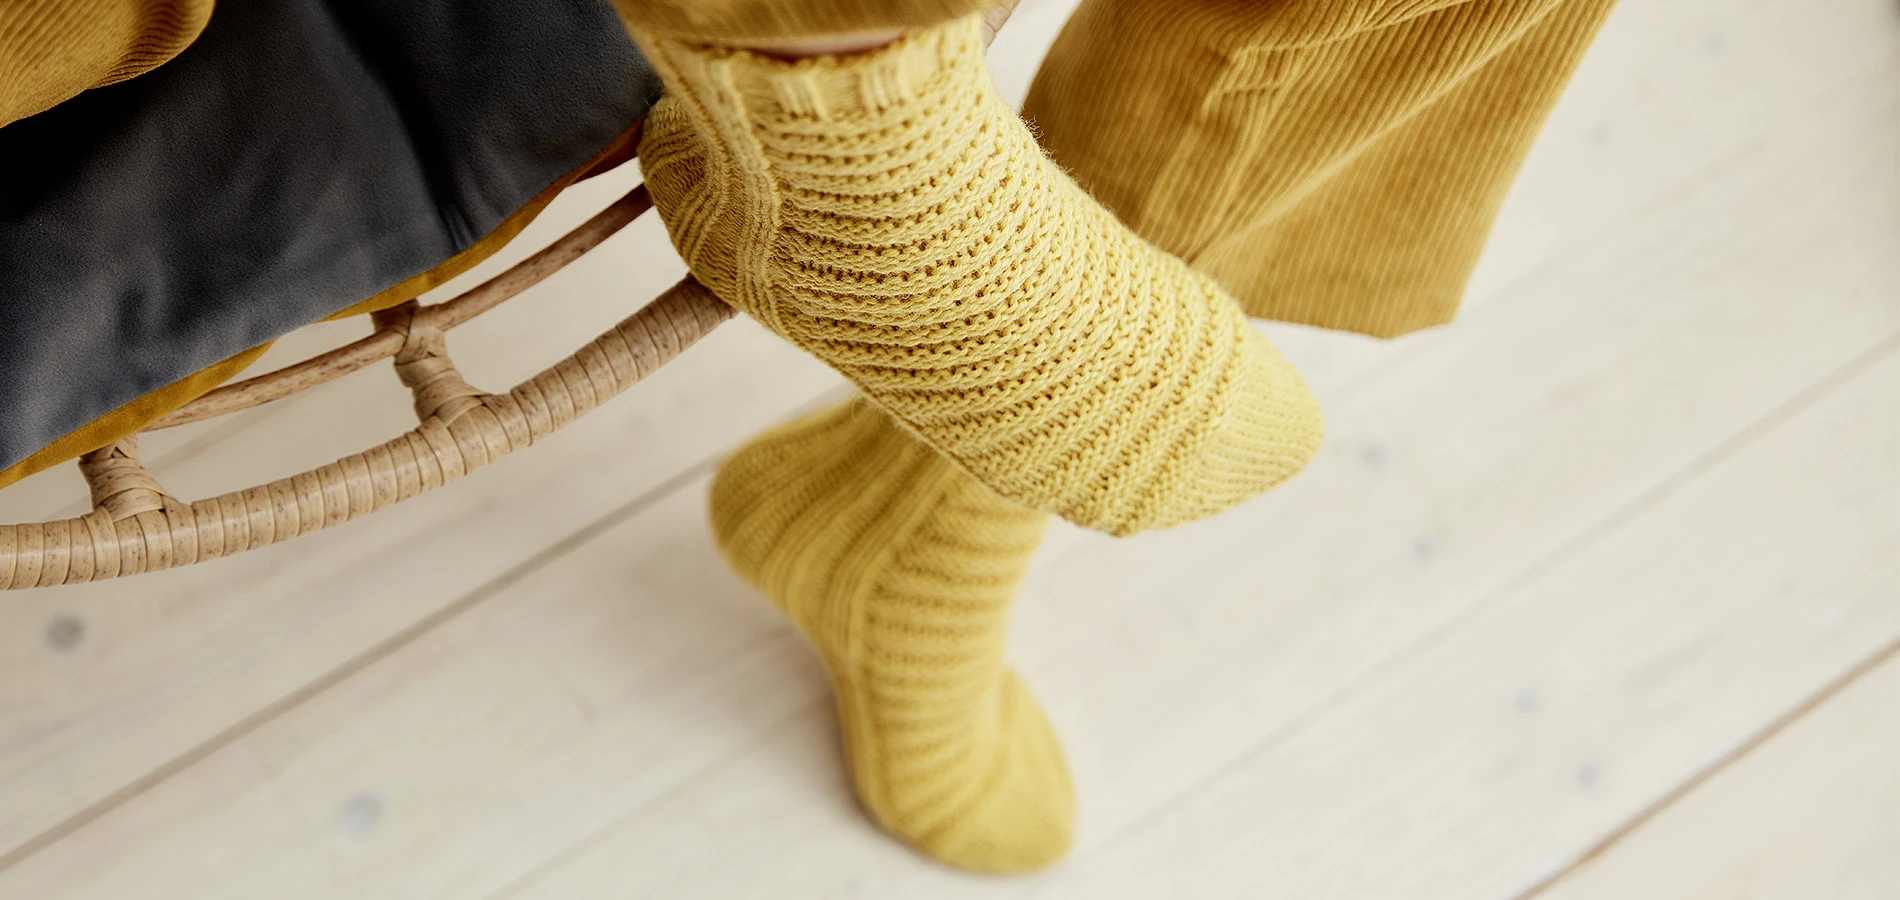 Bild zeigt zwei gelbe Socken sogenannte Bananensocken